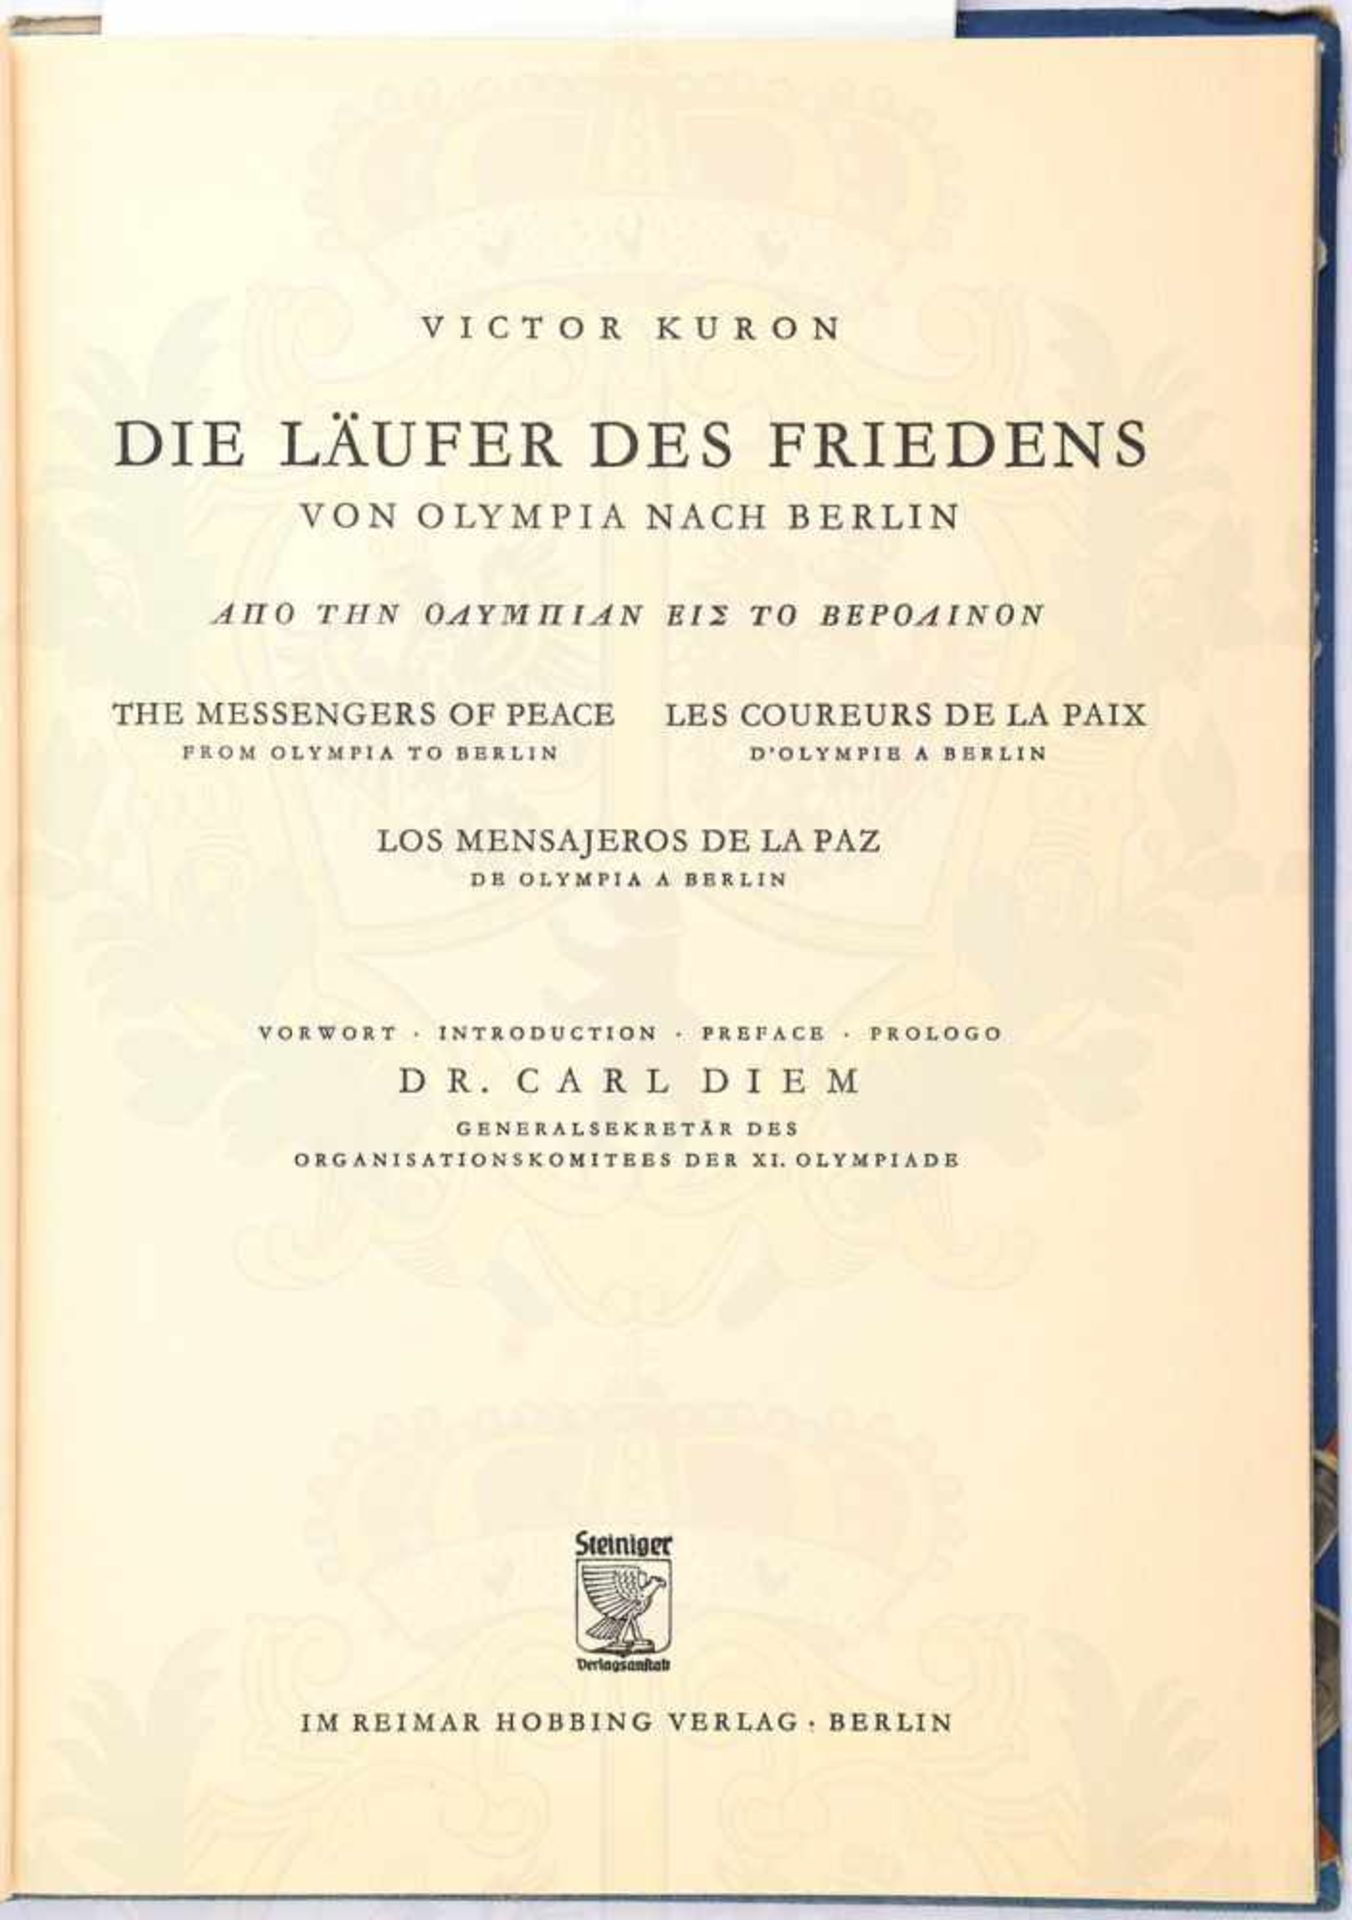 DIE LÄUFER DES FRIEDENS, „Von Olympia nach Berlin“, Bildband, V. Kuron, Berlin 1936, 82 S., Ln., - Bild 2 aus 2